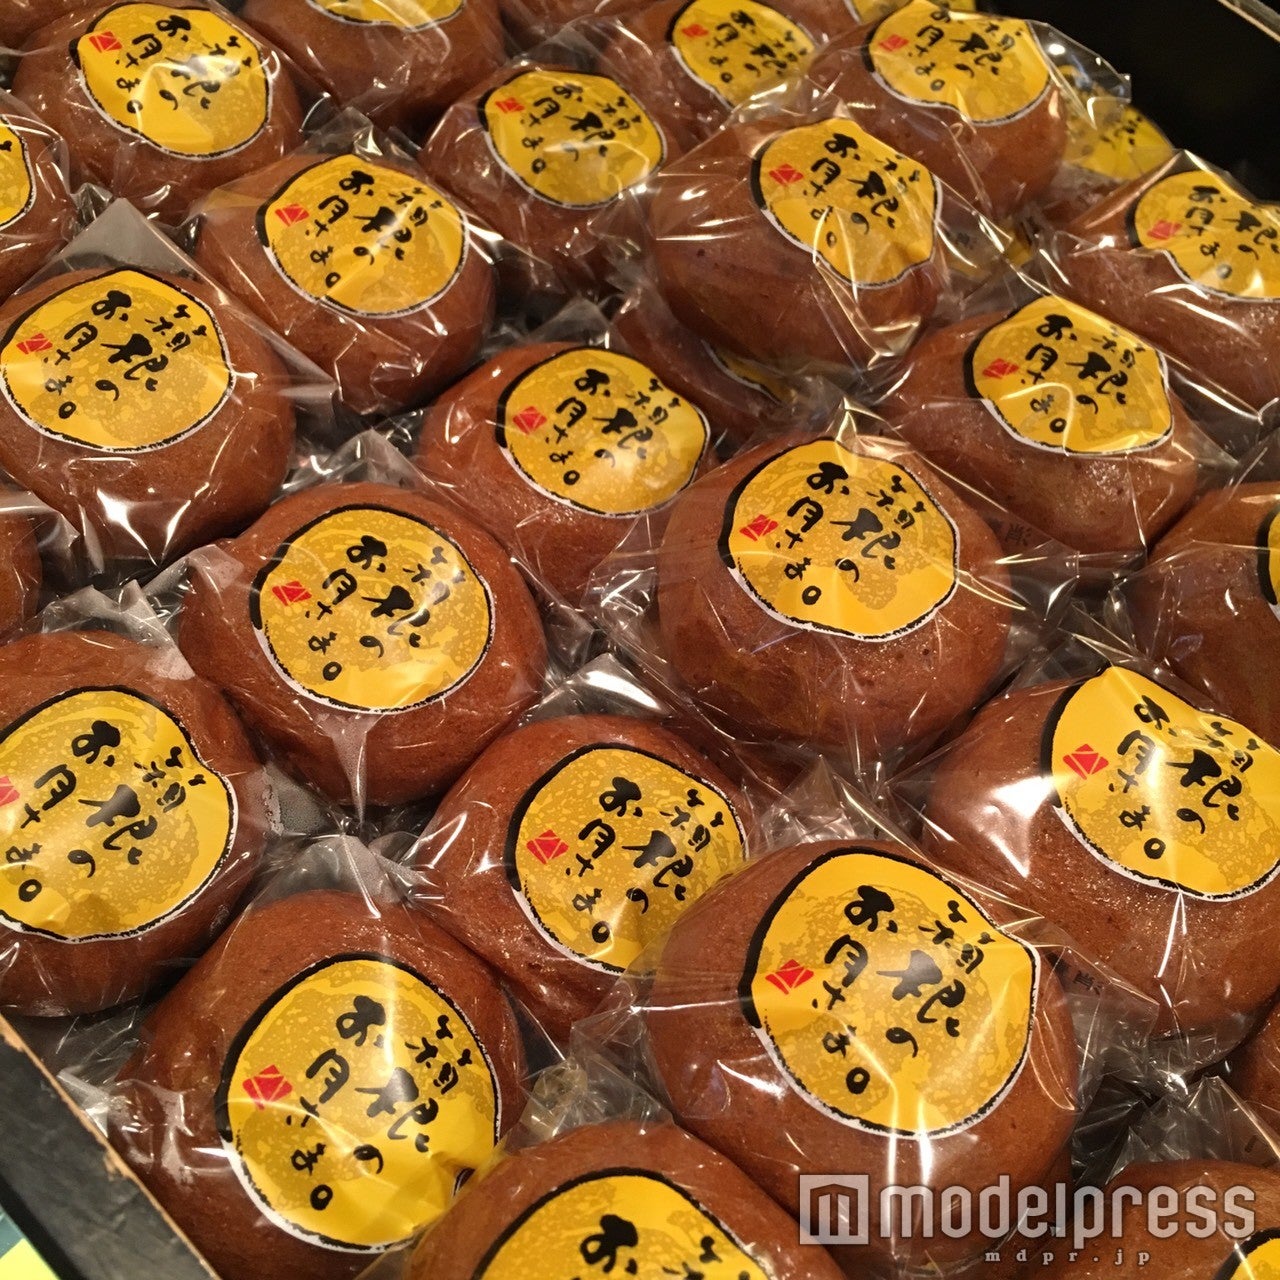 「和菓子 菜の花」の定番「箱根のお月さま」1個100円